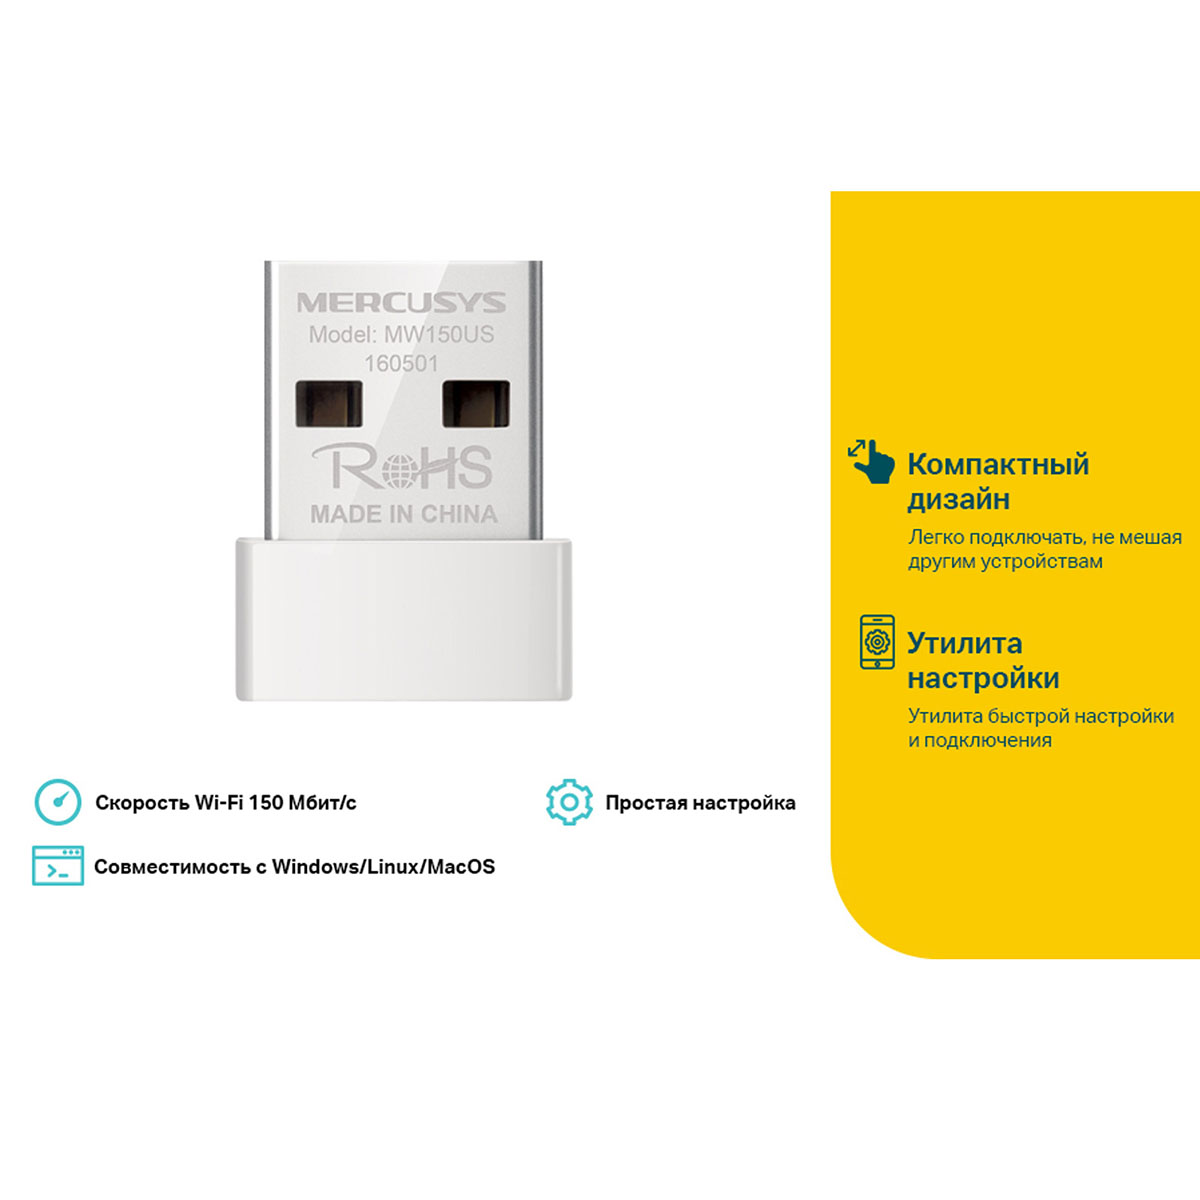 Беспроводной адаптер USB Wi-Fi MERCUSYS MW150US стандарта N, 802.11b/g/n, USB 2.0, 150 Mb/s, цвет белый